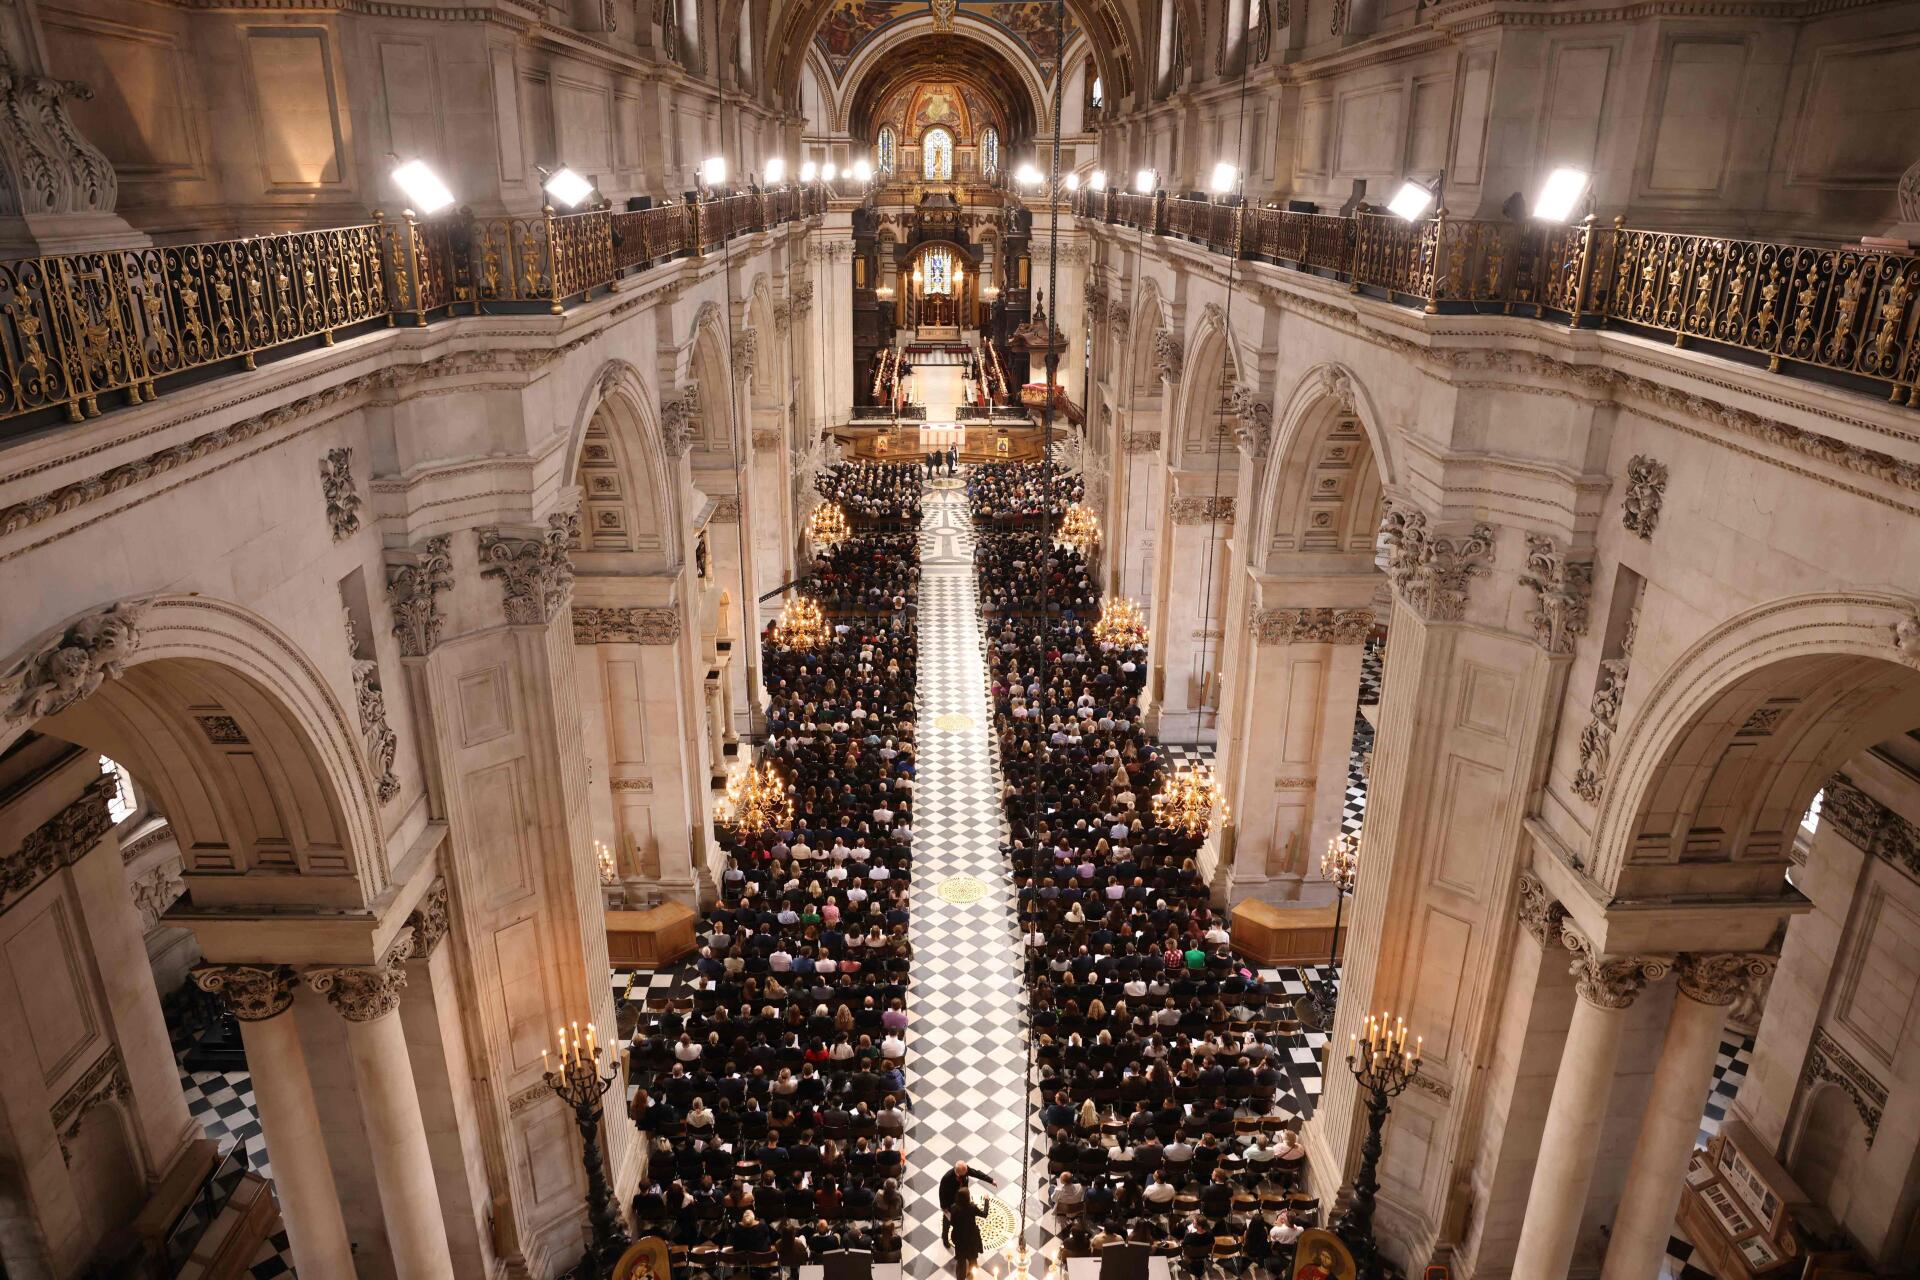 La misa conmemorativa en honor de la Reina Isabel II en la Catedral de San Pablo en Londres, el 9 de septiembre de 2022.